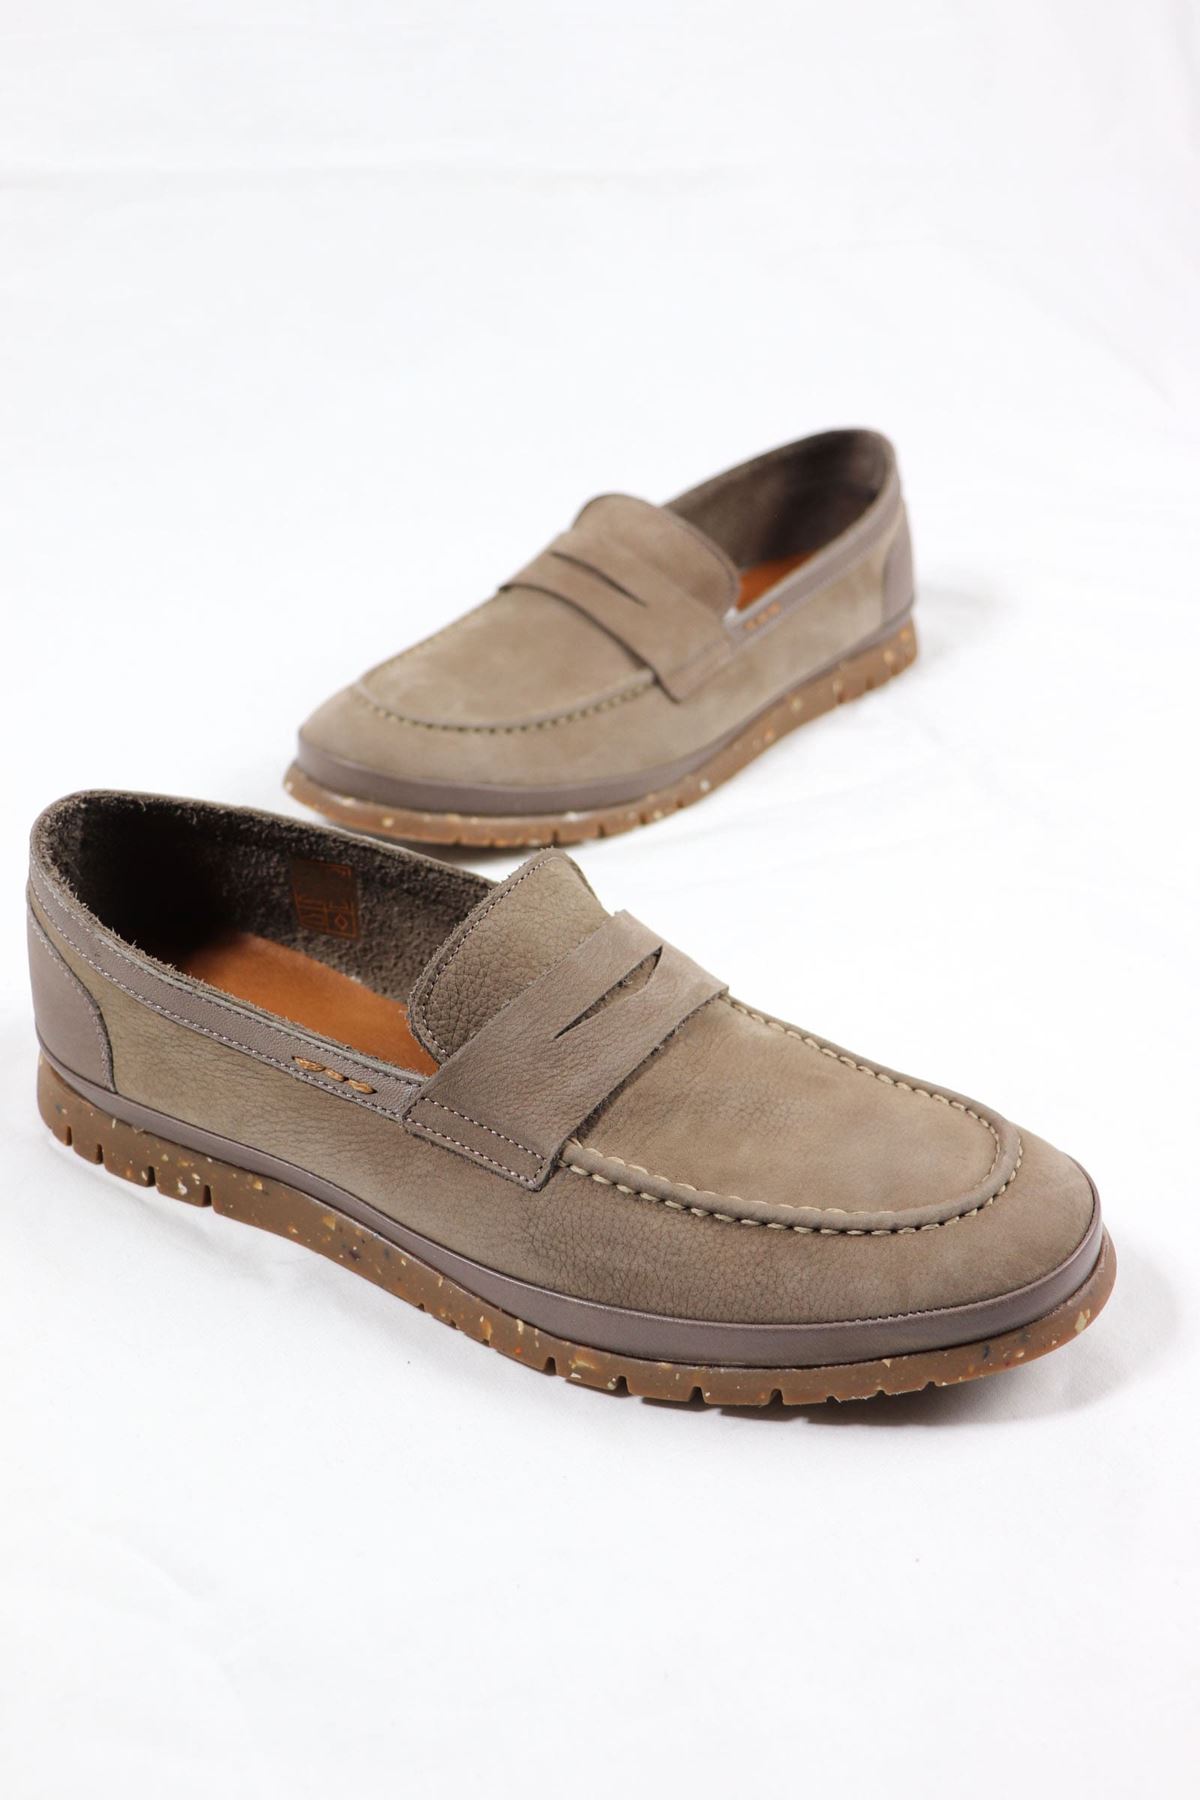 Freefoot - 220161 - Vizon Süet Deri Erkek Ayakkabı 